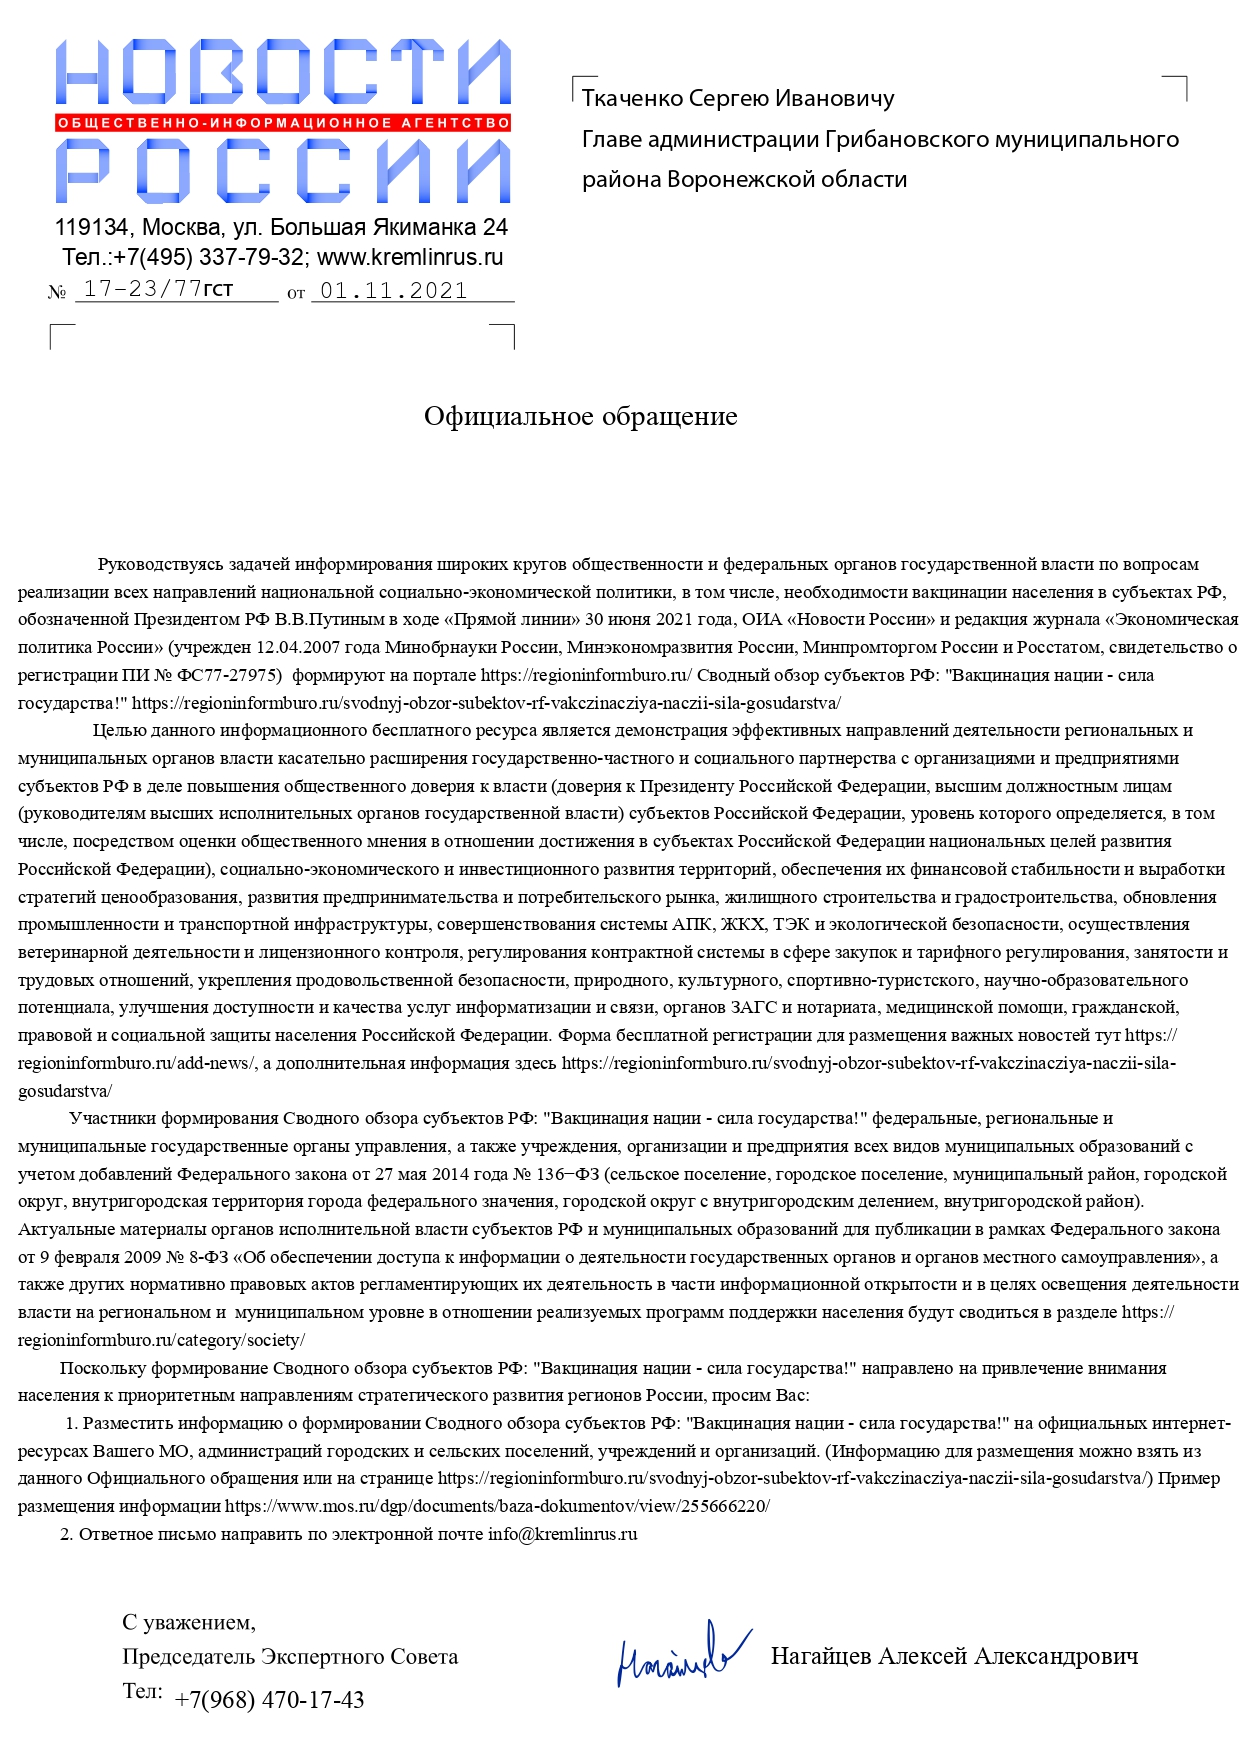 Сводный обзор субъектов РФ Вакцинация нации сила государства 1 pages to jpg 0001